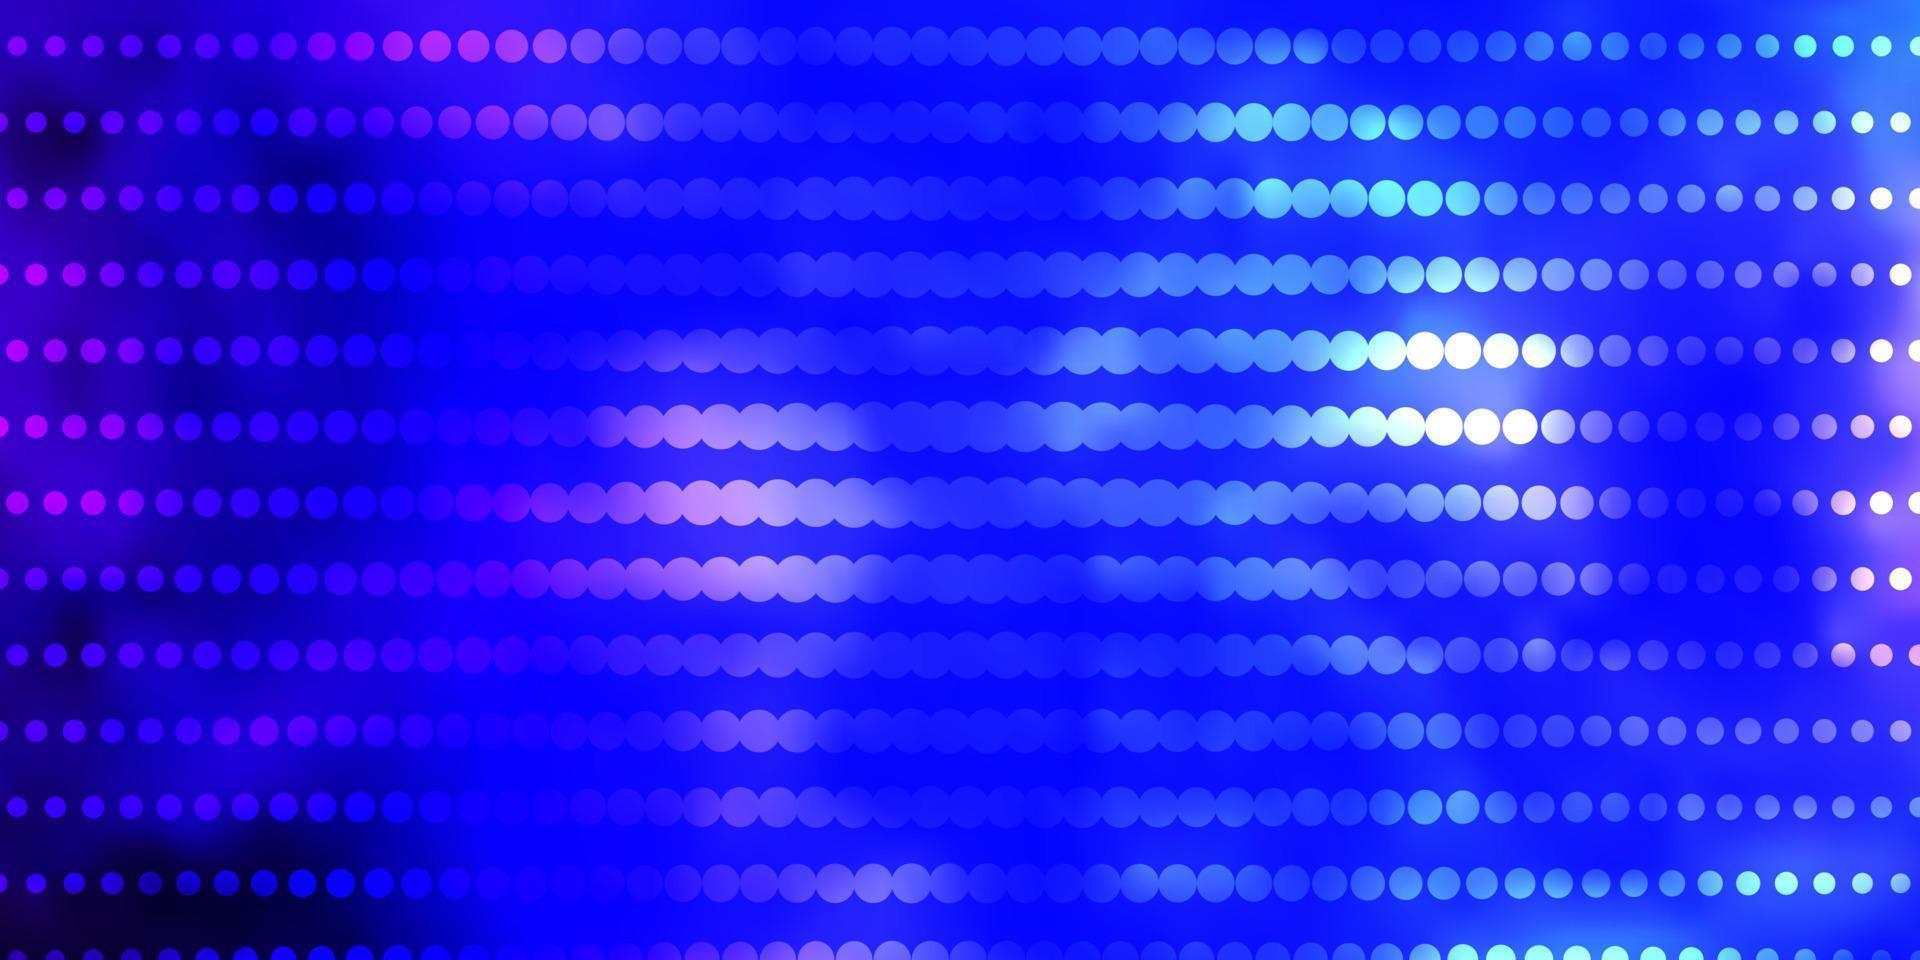 texture de vecteur bleu clair avec des cercles.